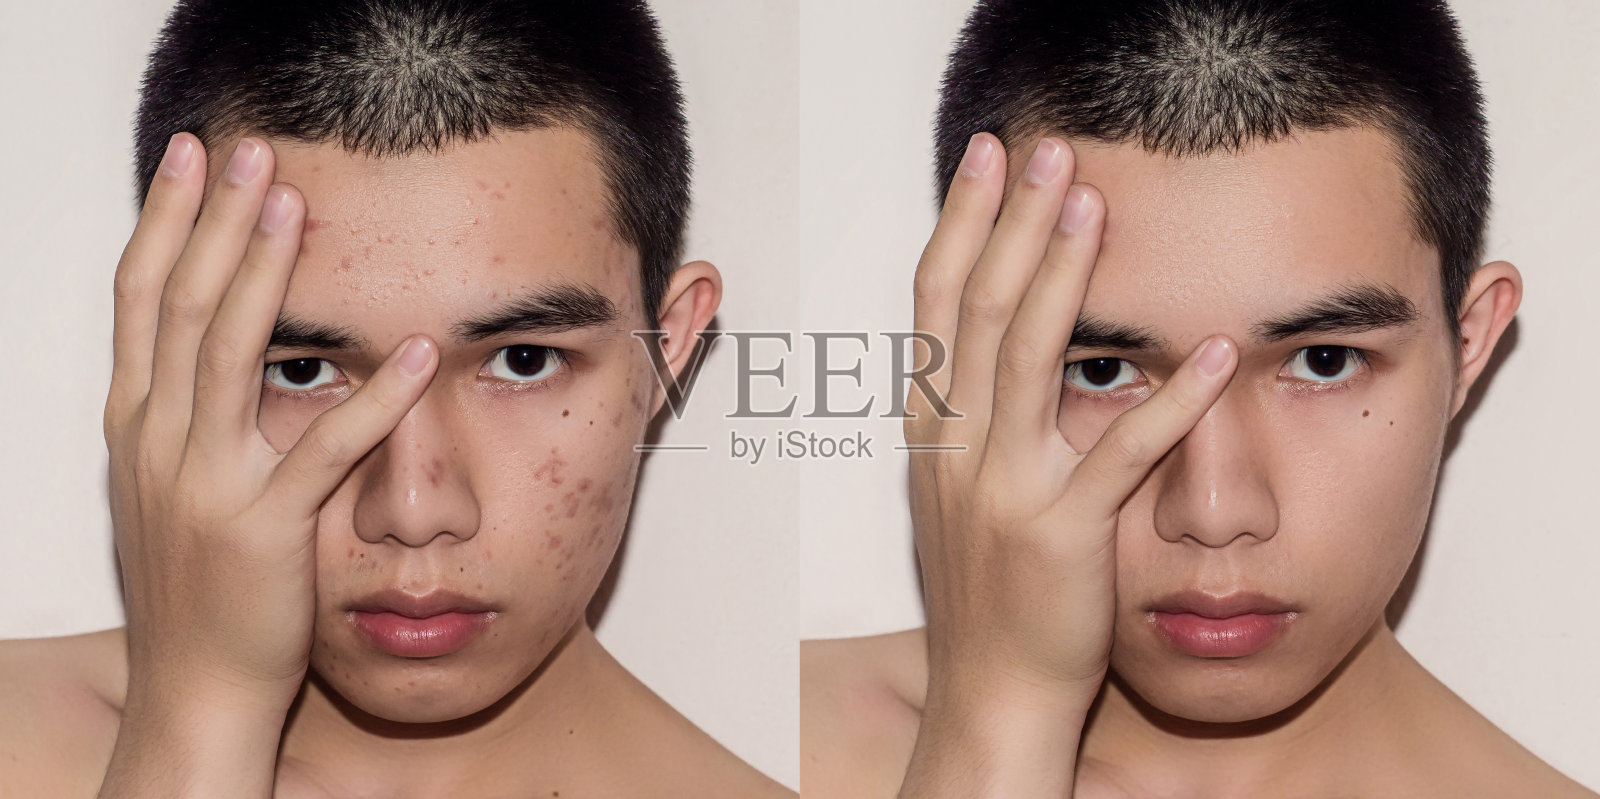 青年男子治疗前后由痤疮和丘疹去除痤疮。照片摄影图片